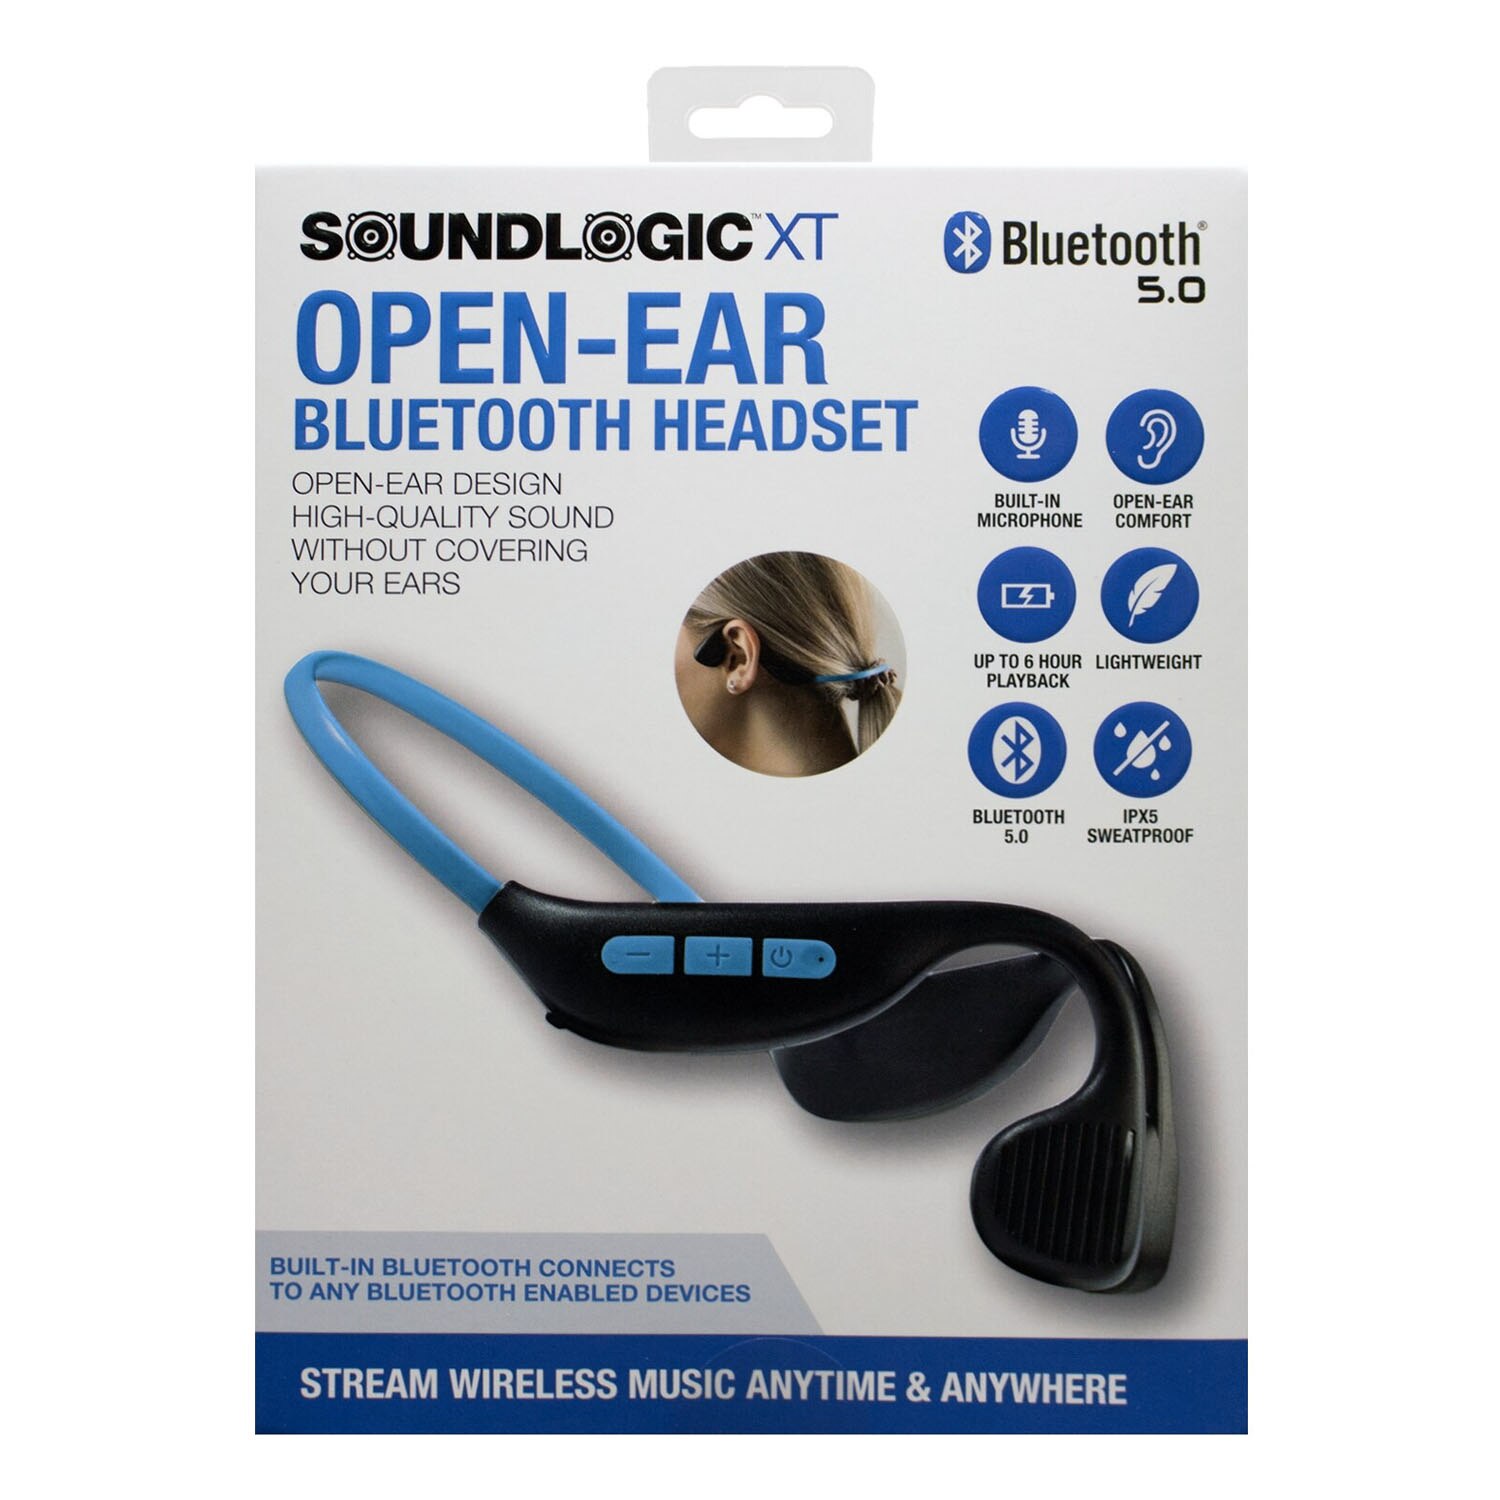 SoundLogic XT Open-Ear Wireless Headset